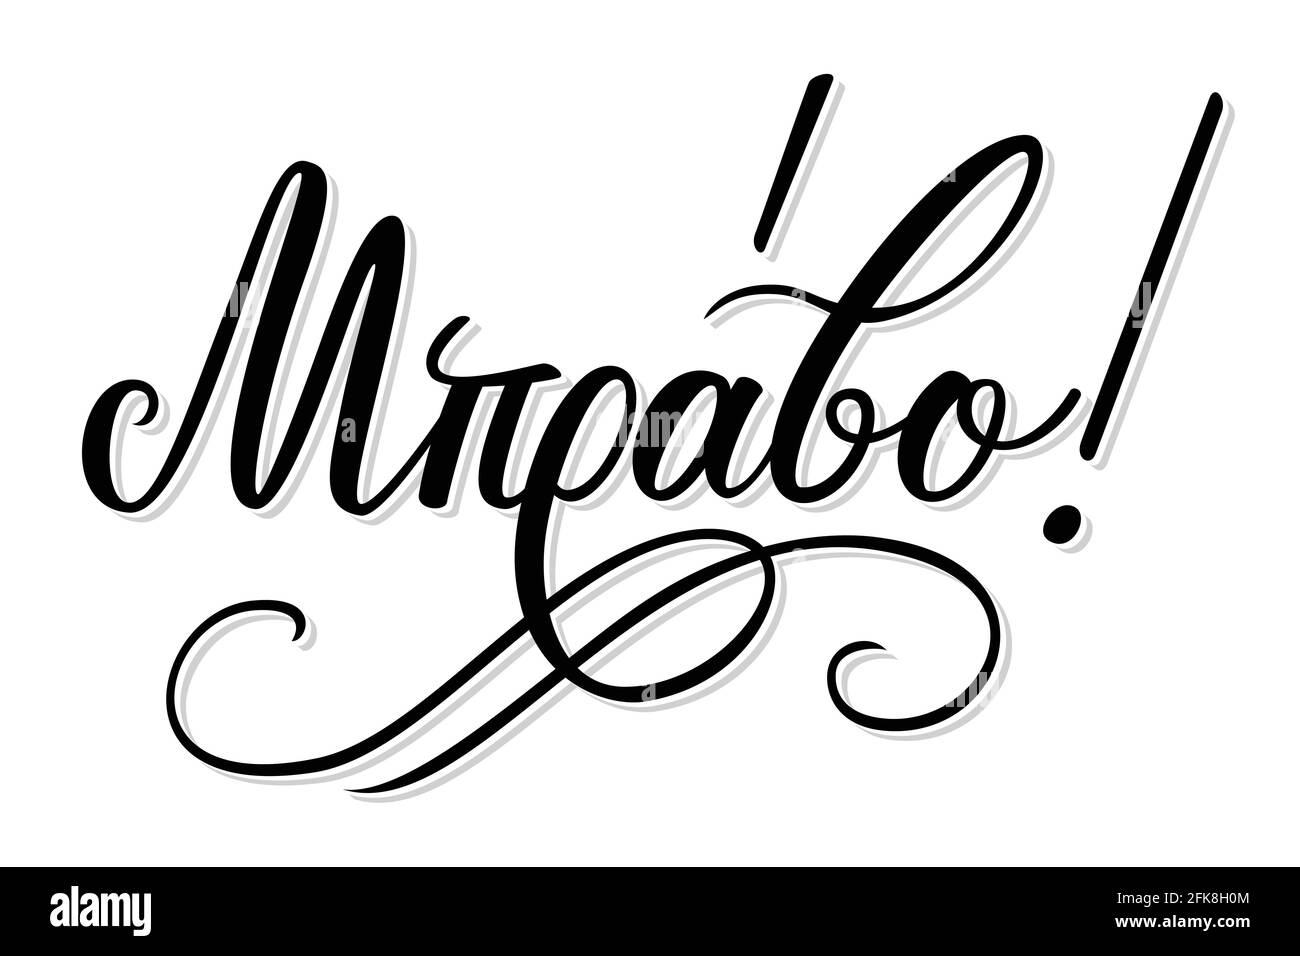 Le mot Mpravo écrit à la main en grec signifie Bravo. Isolé sur fond blanc avec des illustrations vectorielles Illustration de Vecteur